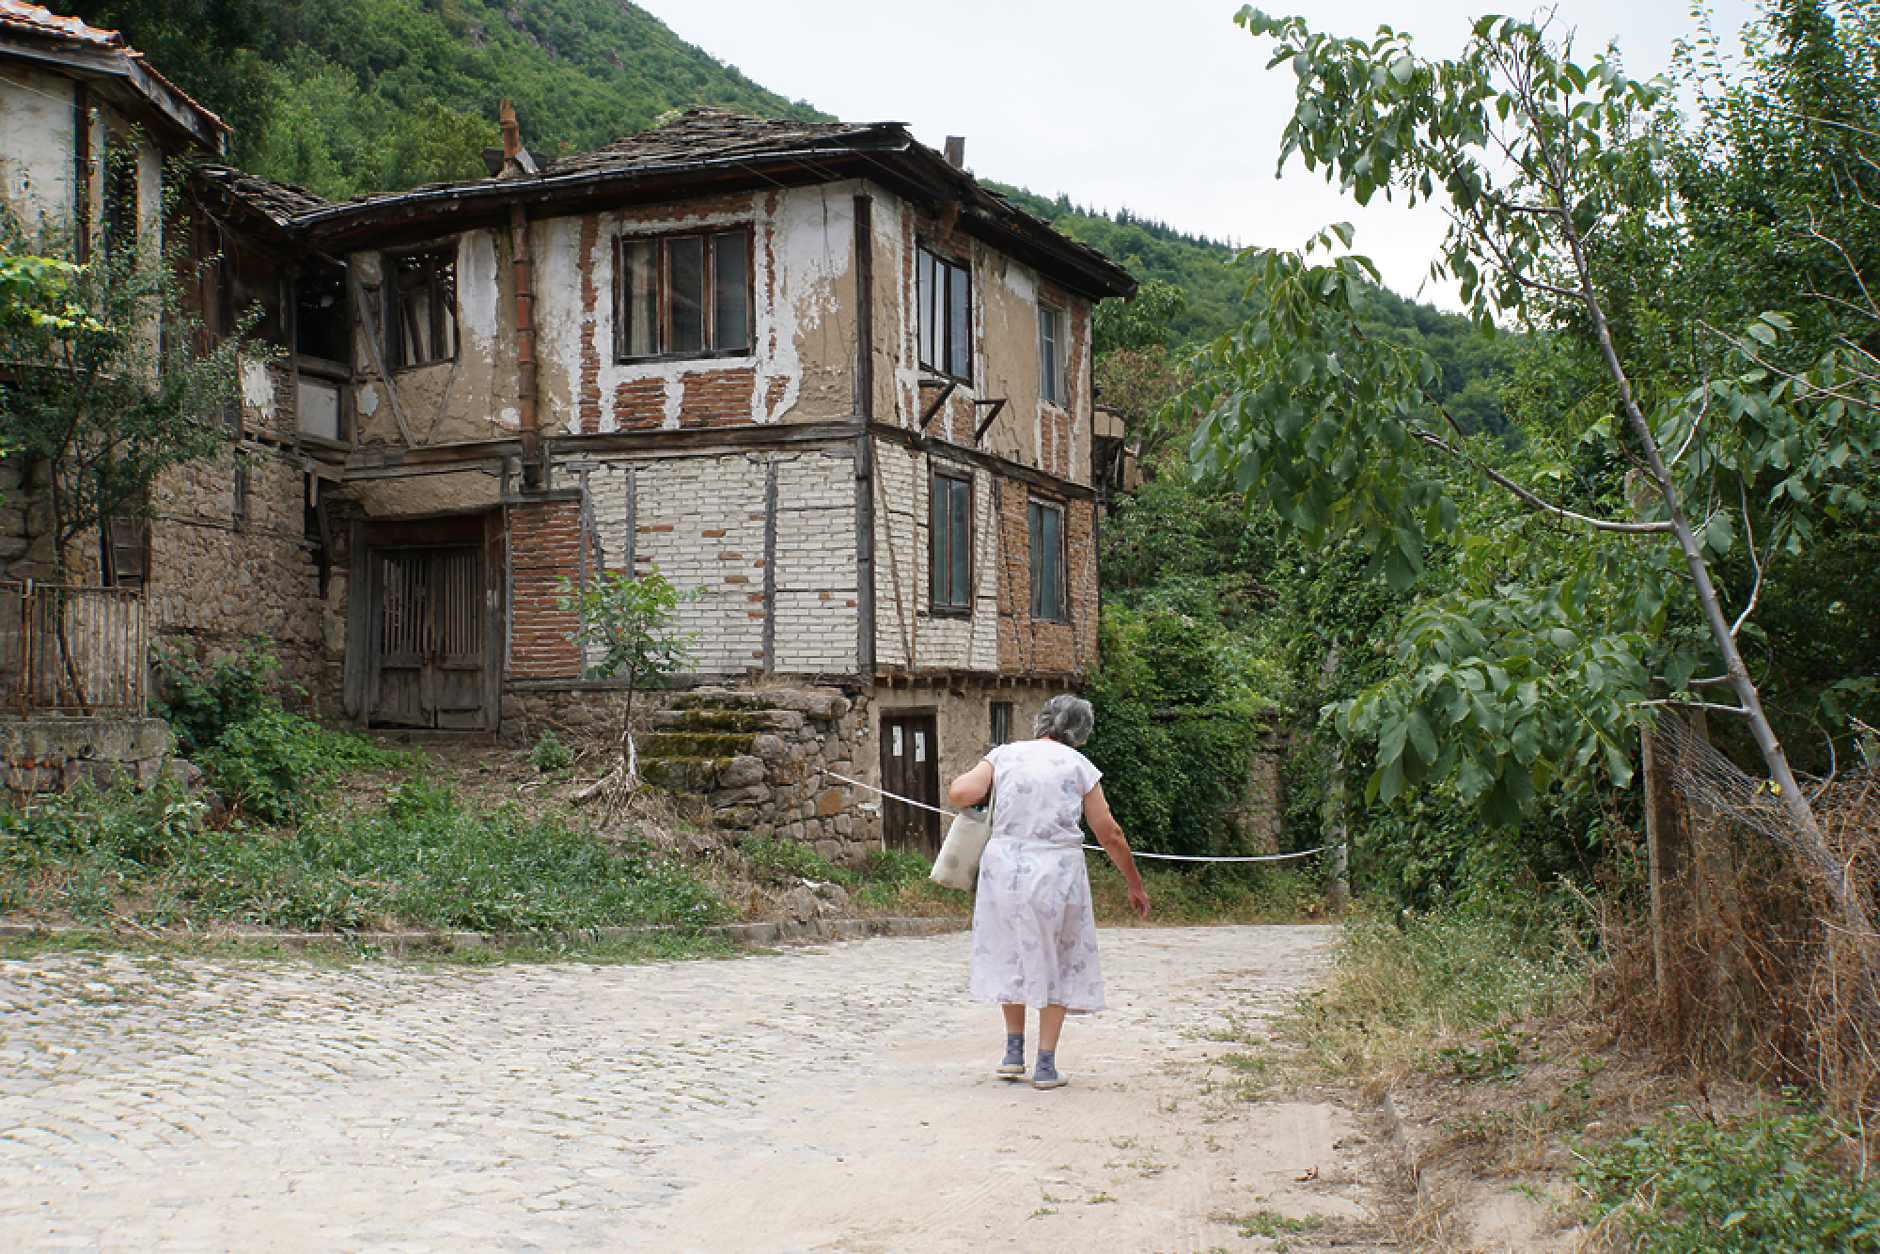 201 населени места в България са напълно обезлюдени